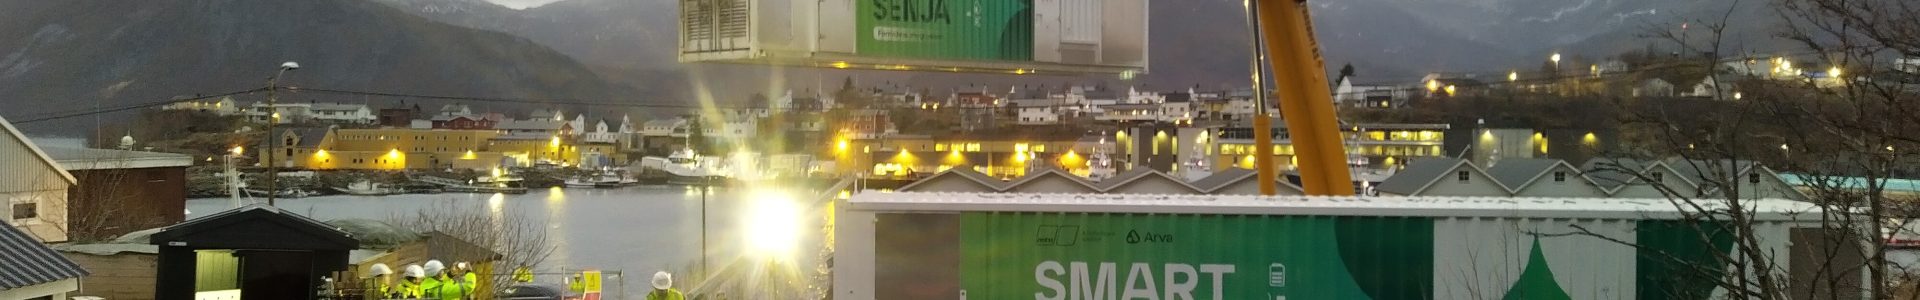 Fiskeri- og havminister Bjørnar Selnes Skjæran åpner batteriene på Senja